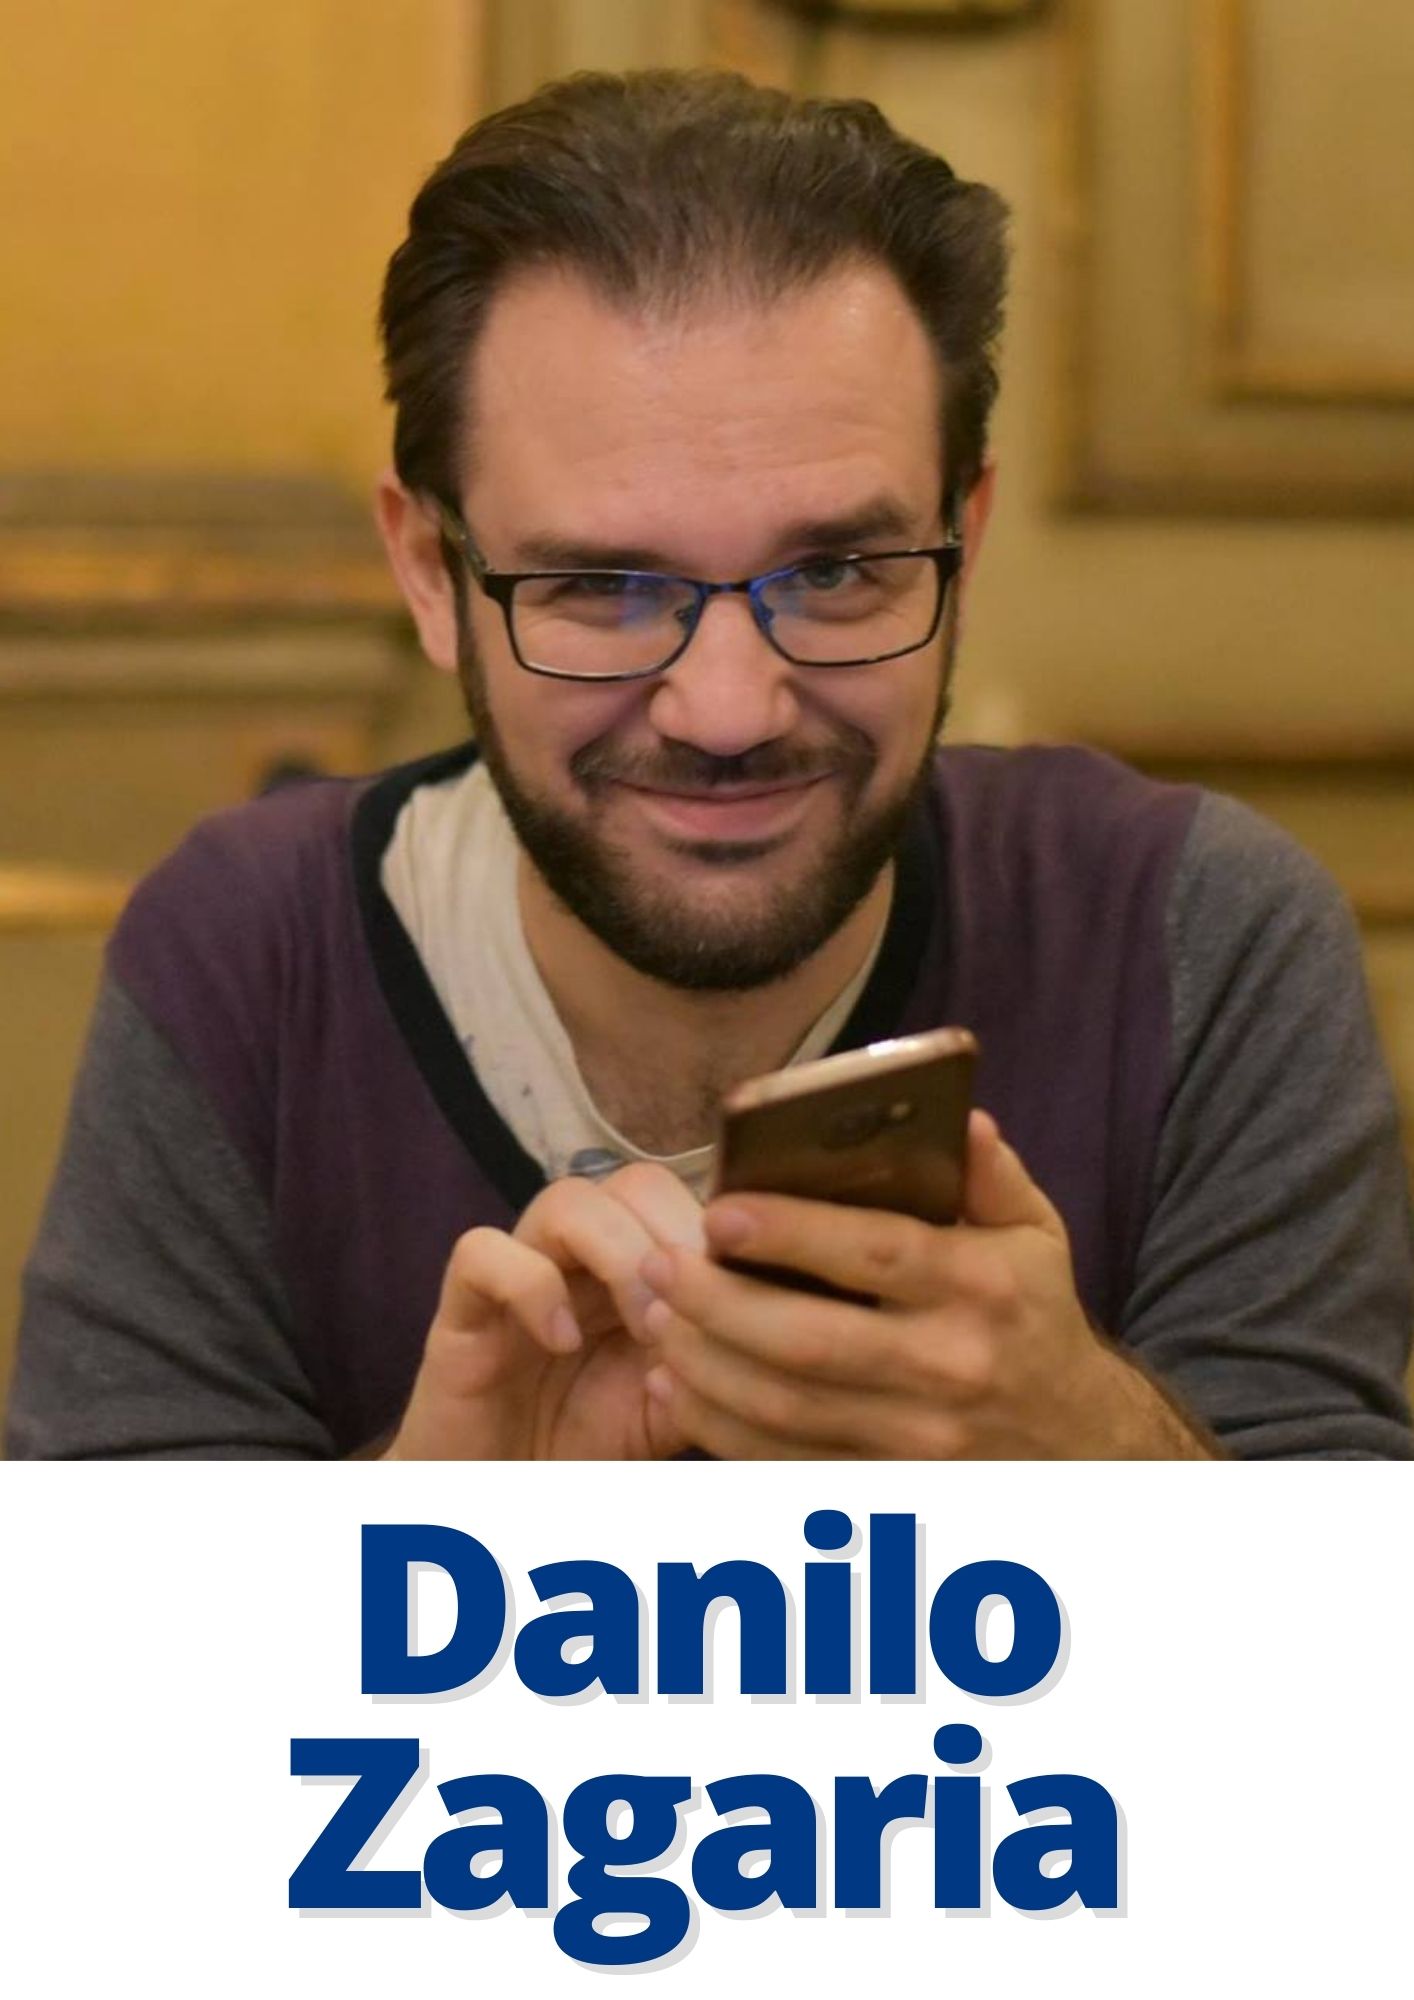 Danilo Zagaria